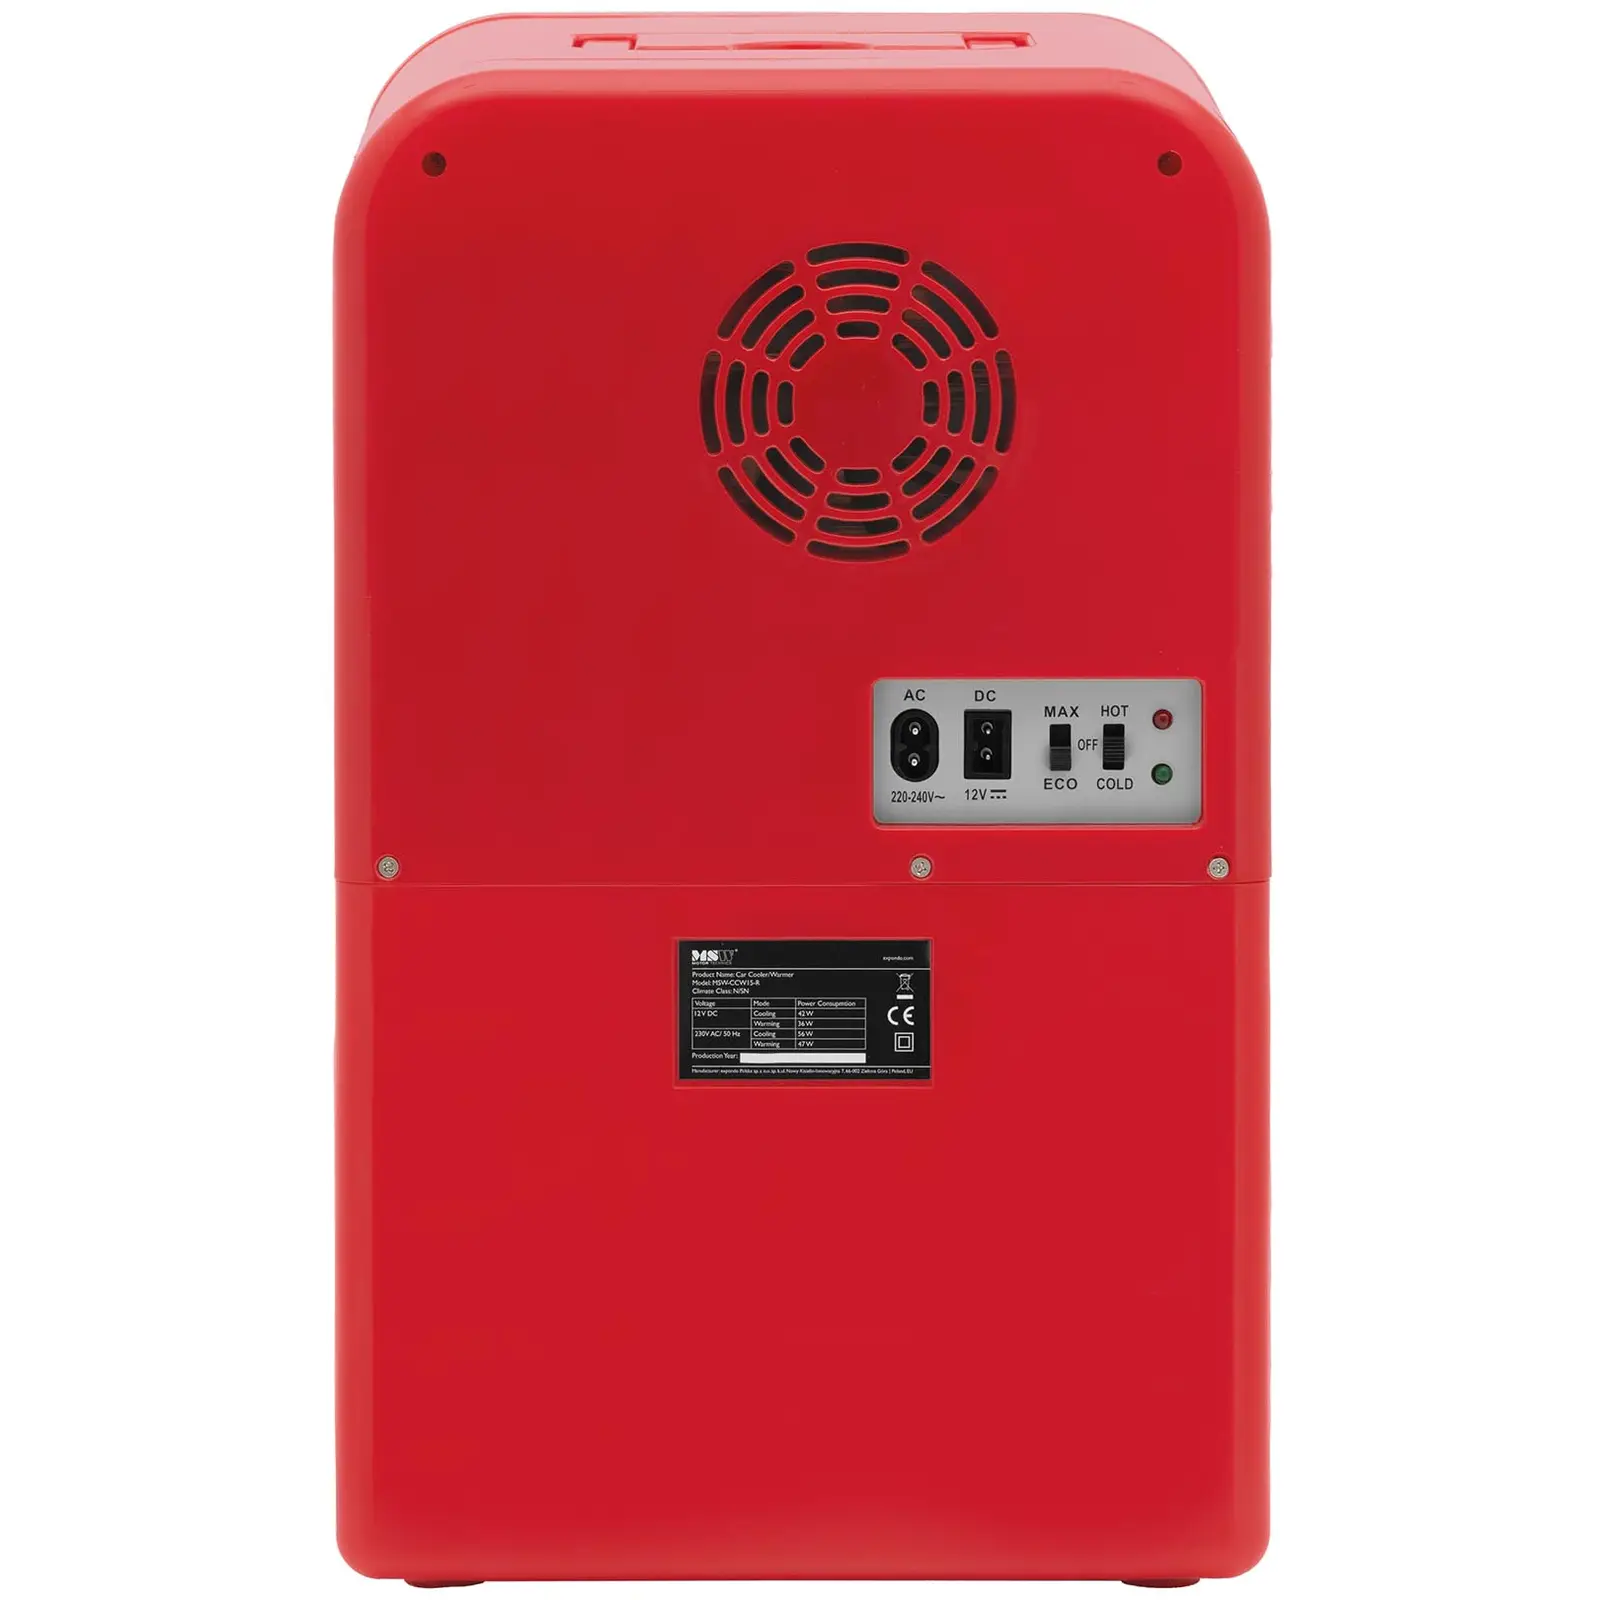 B-Ware Mini-Kühlschrank 12 V / 230 V - 2-in-1-Gerät mit Warmhaltefunktion - 15 L - Rot